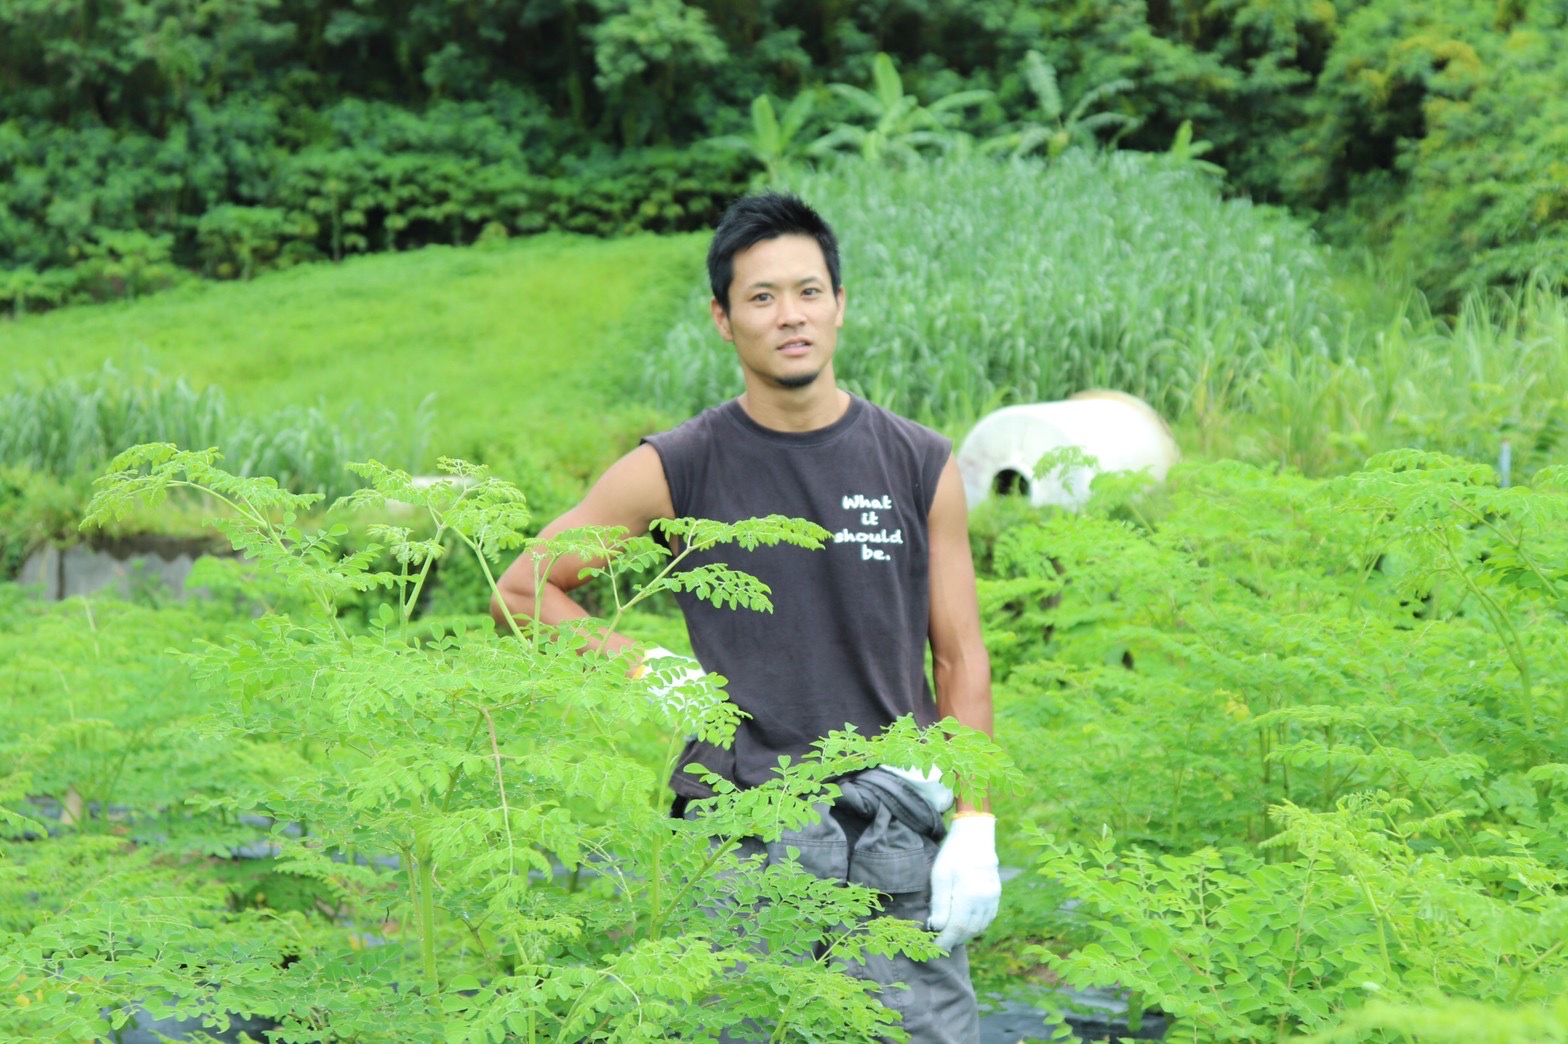 沖縄県にある自然栽培農家。
本然農園では、持続可能な社会を目指すために環境や人体への安全を考えた無肥料無農薬の自然栽培という農法でモリンガ栽培をメインに活動しております。